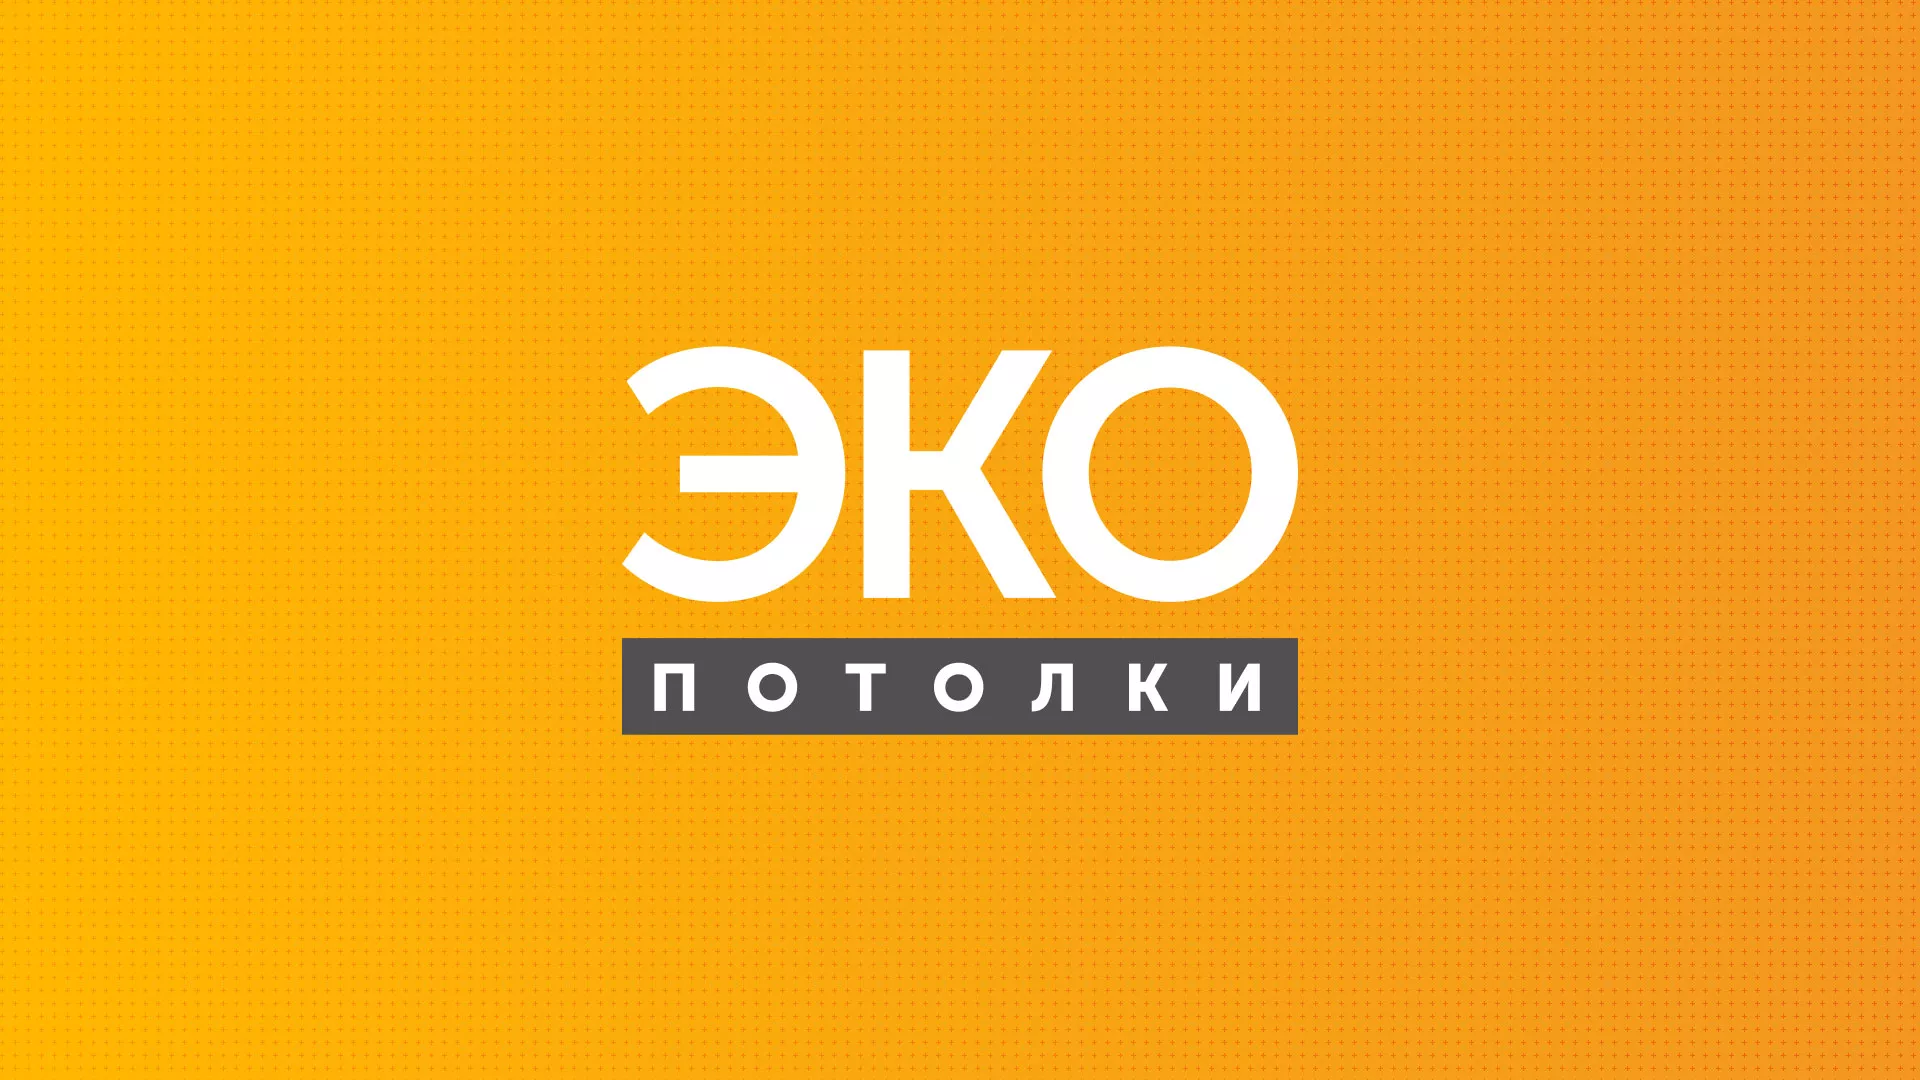 Разработка сайта по натяжным потолкам «Эко Потолки» в Домодедово